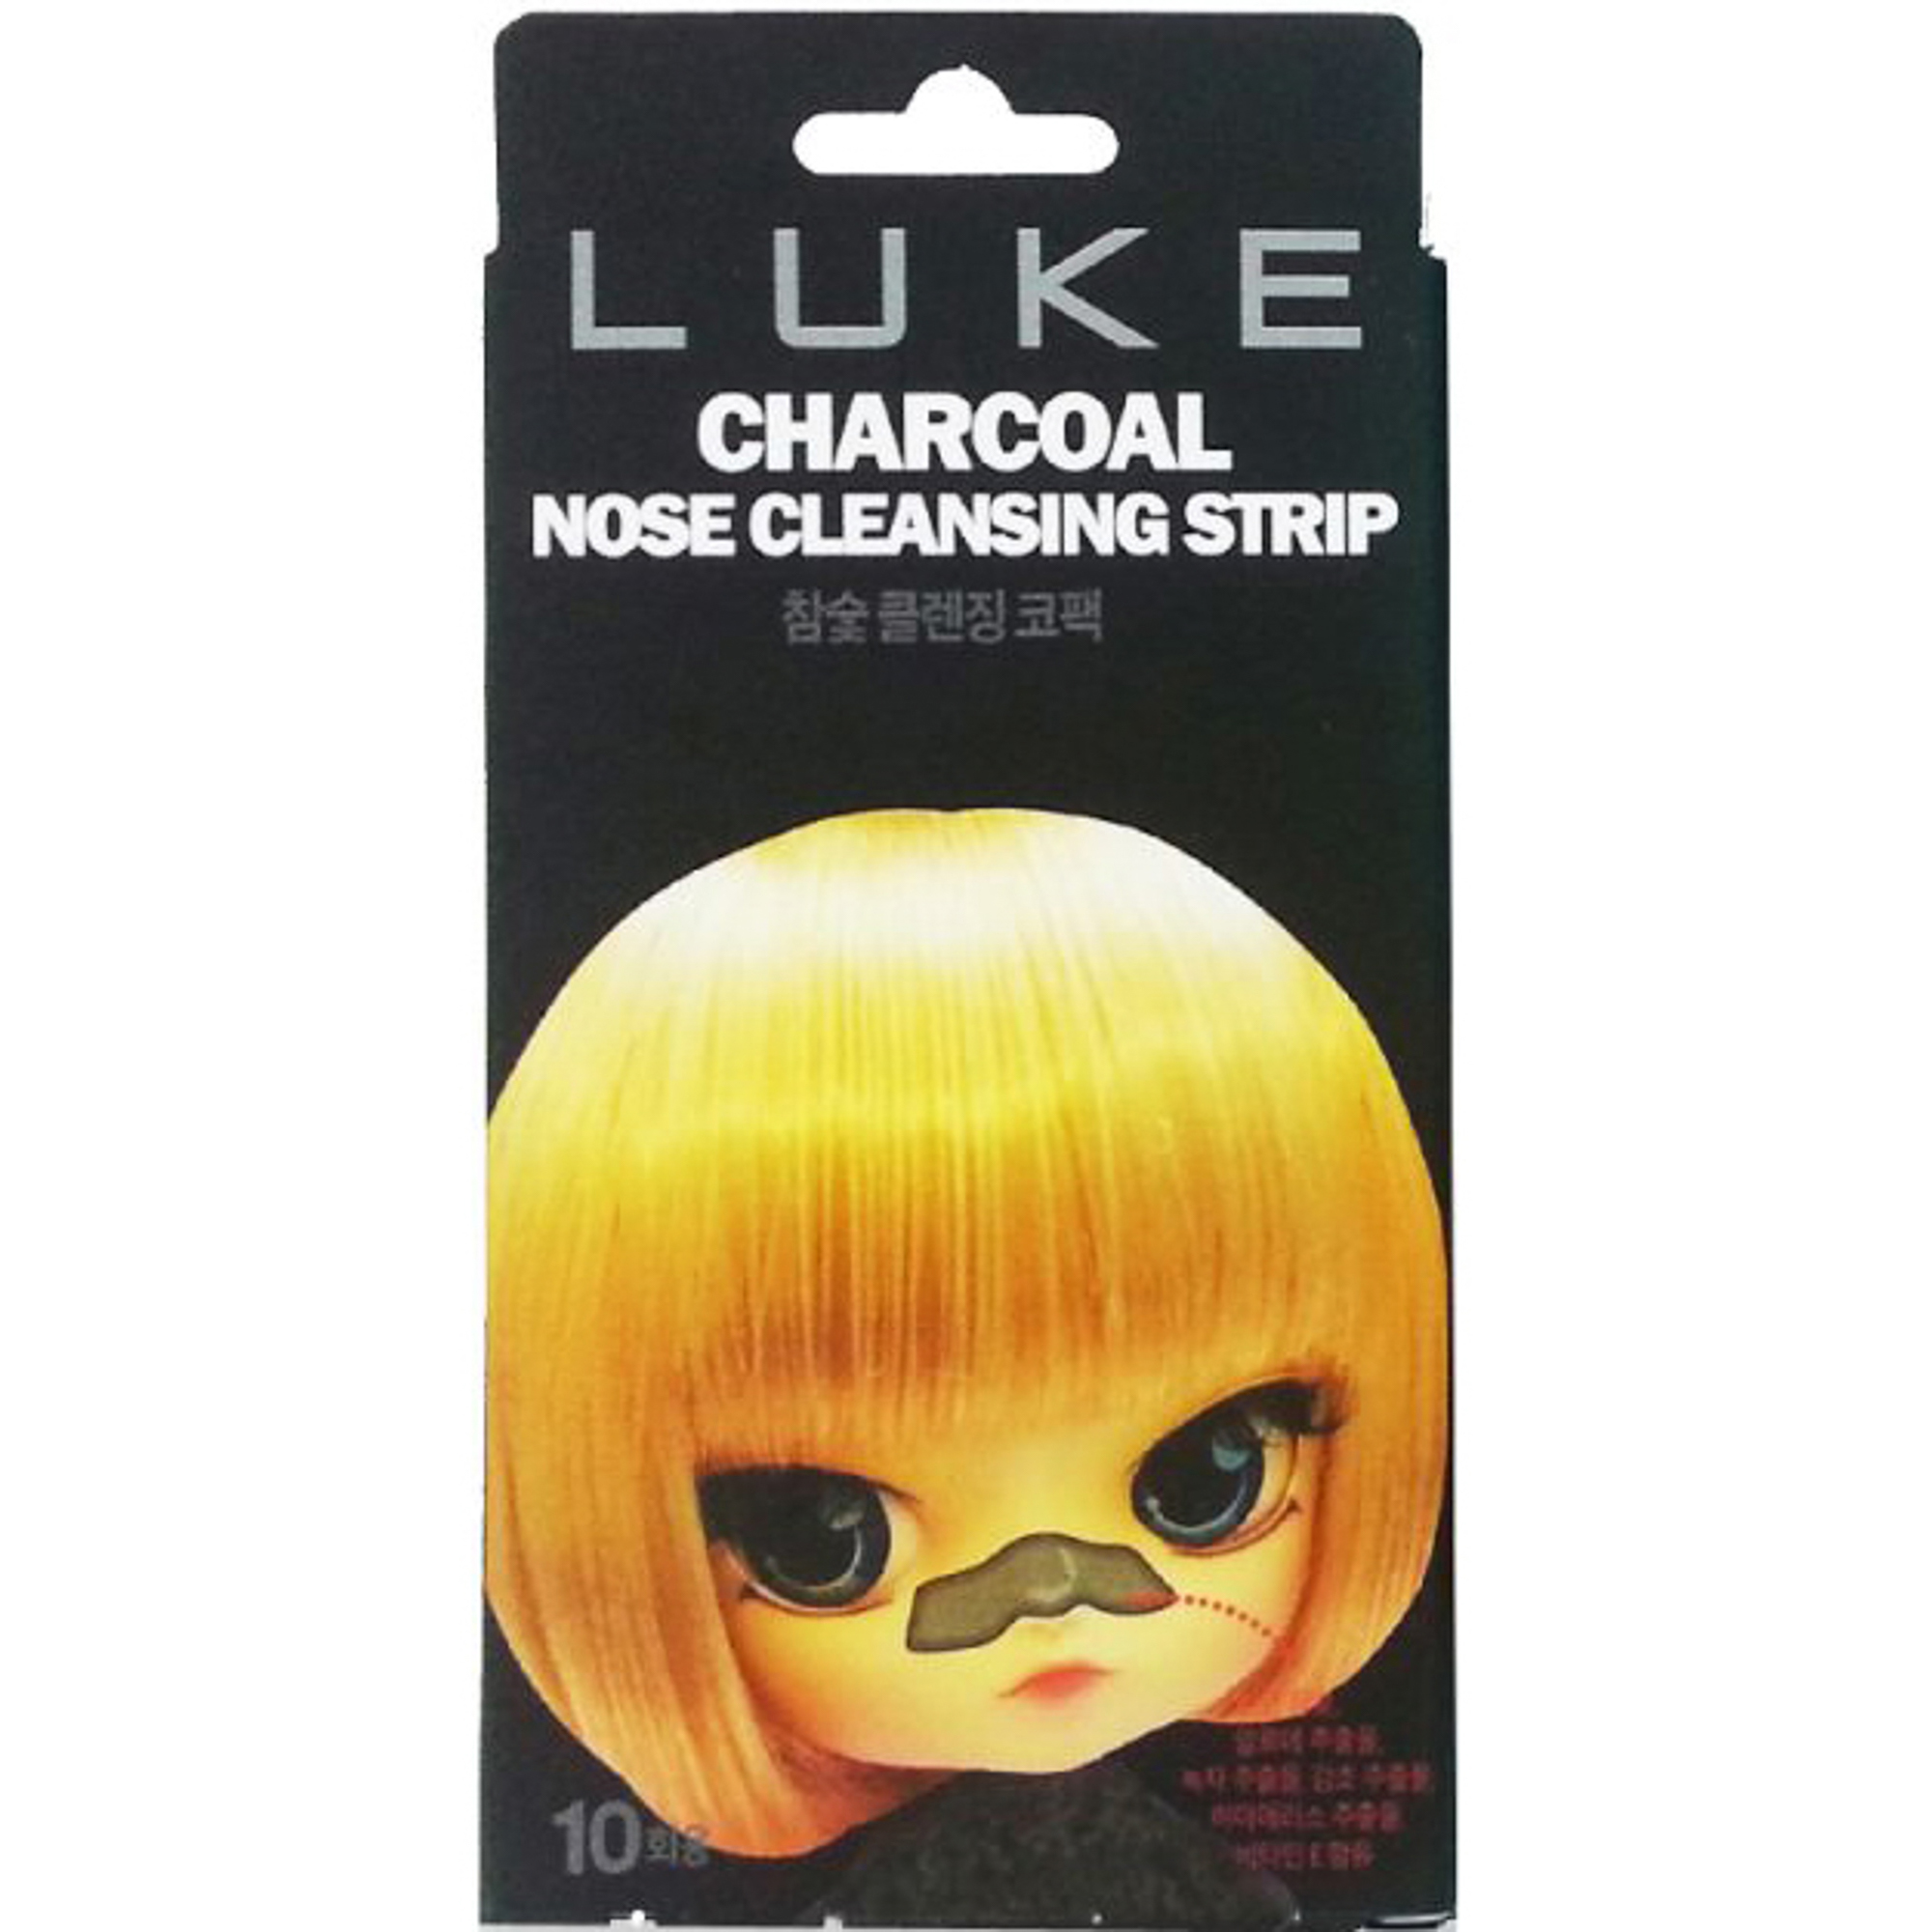 Очищающие полоски Luke Charcoal Nose Cleansing Strip 10 шт полоски для квиллинга 120 полосок плотность 120 гр